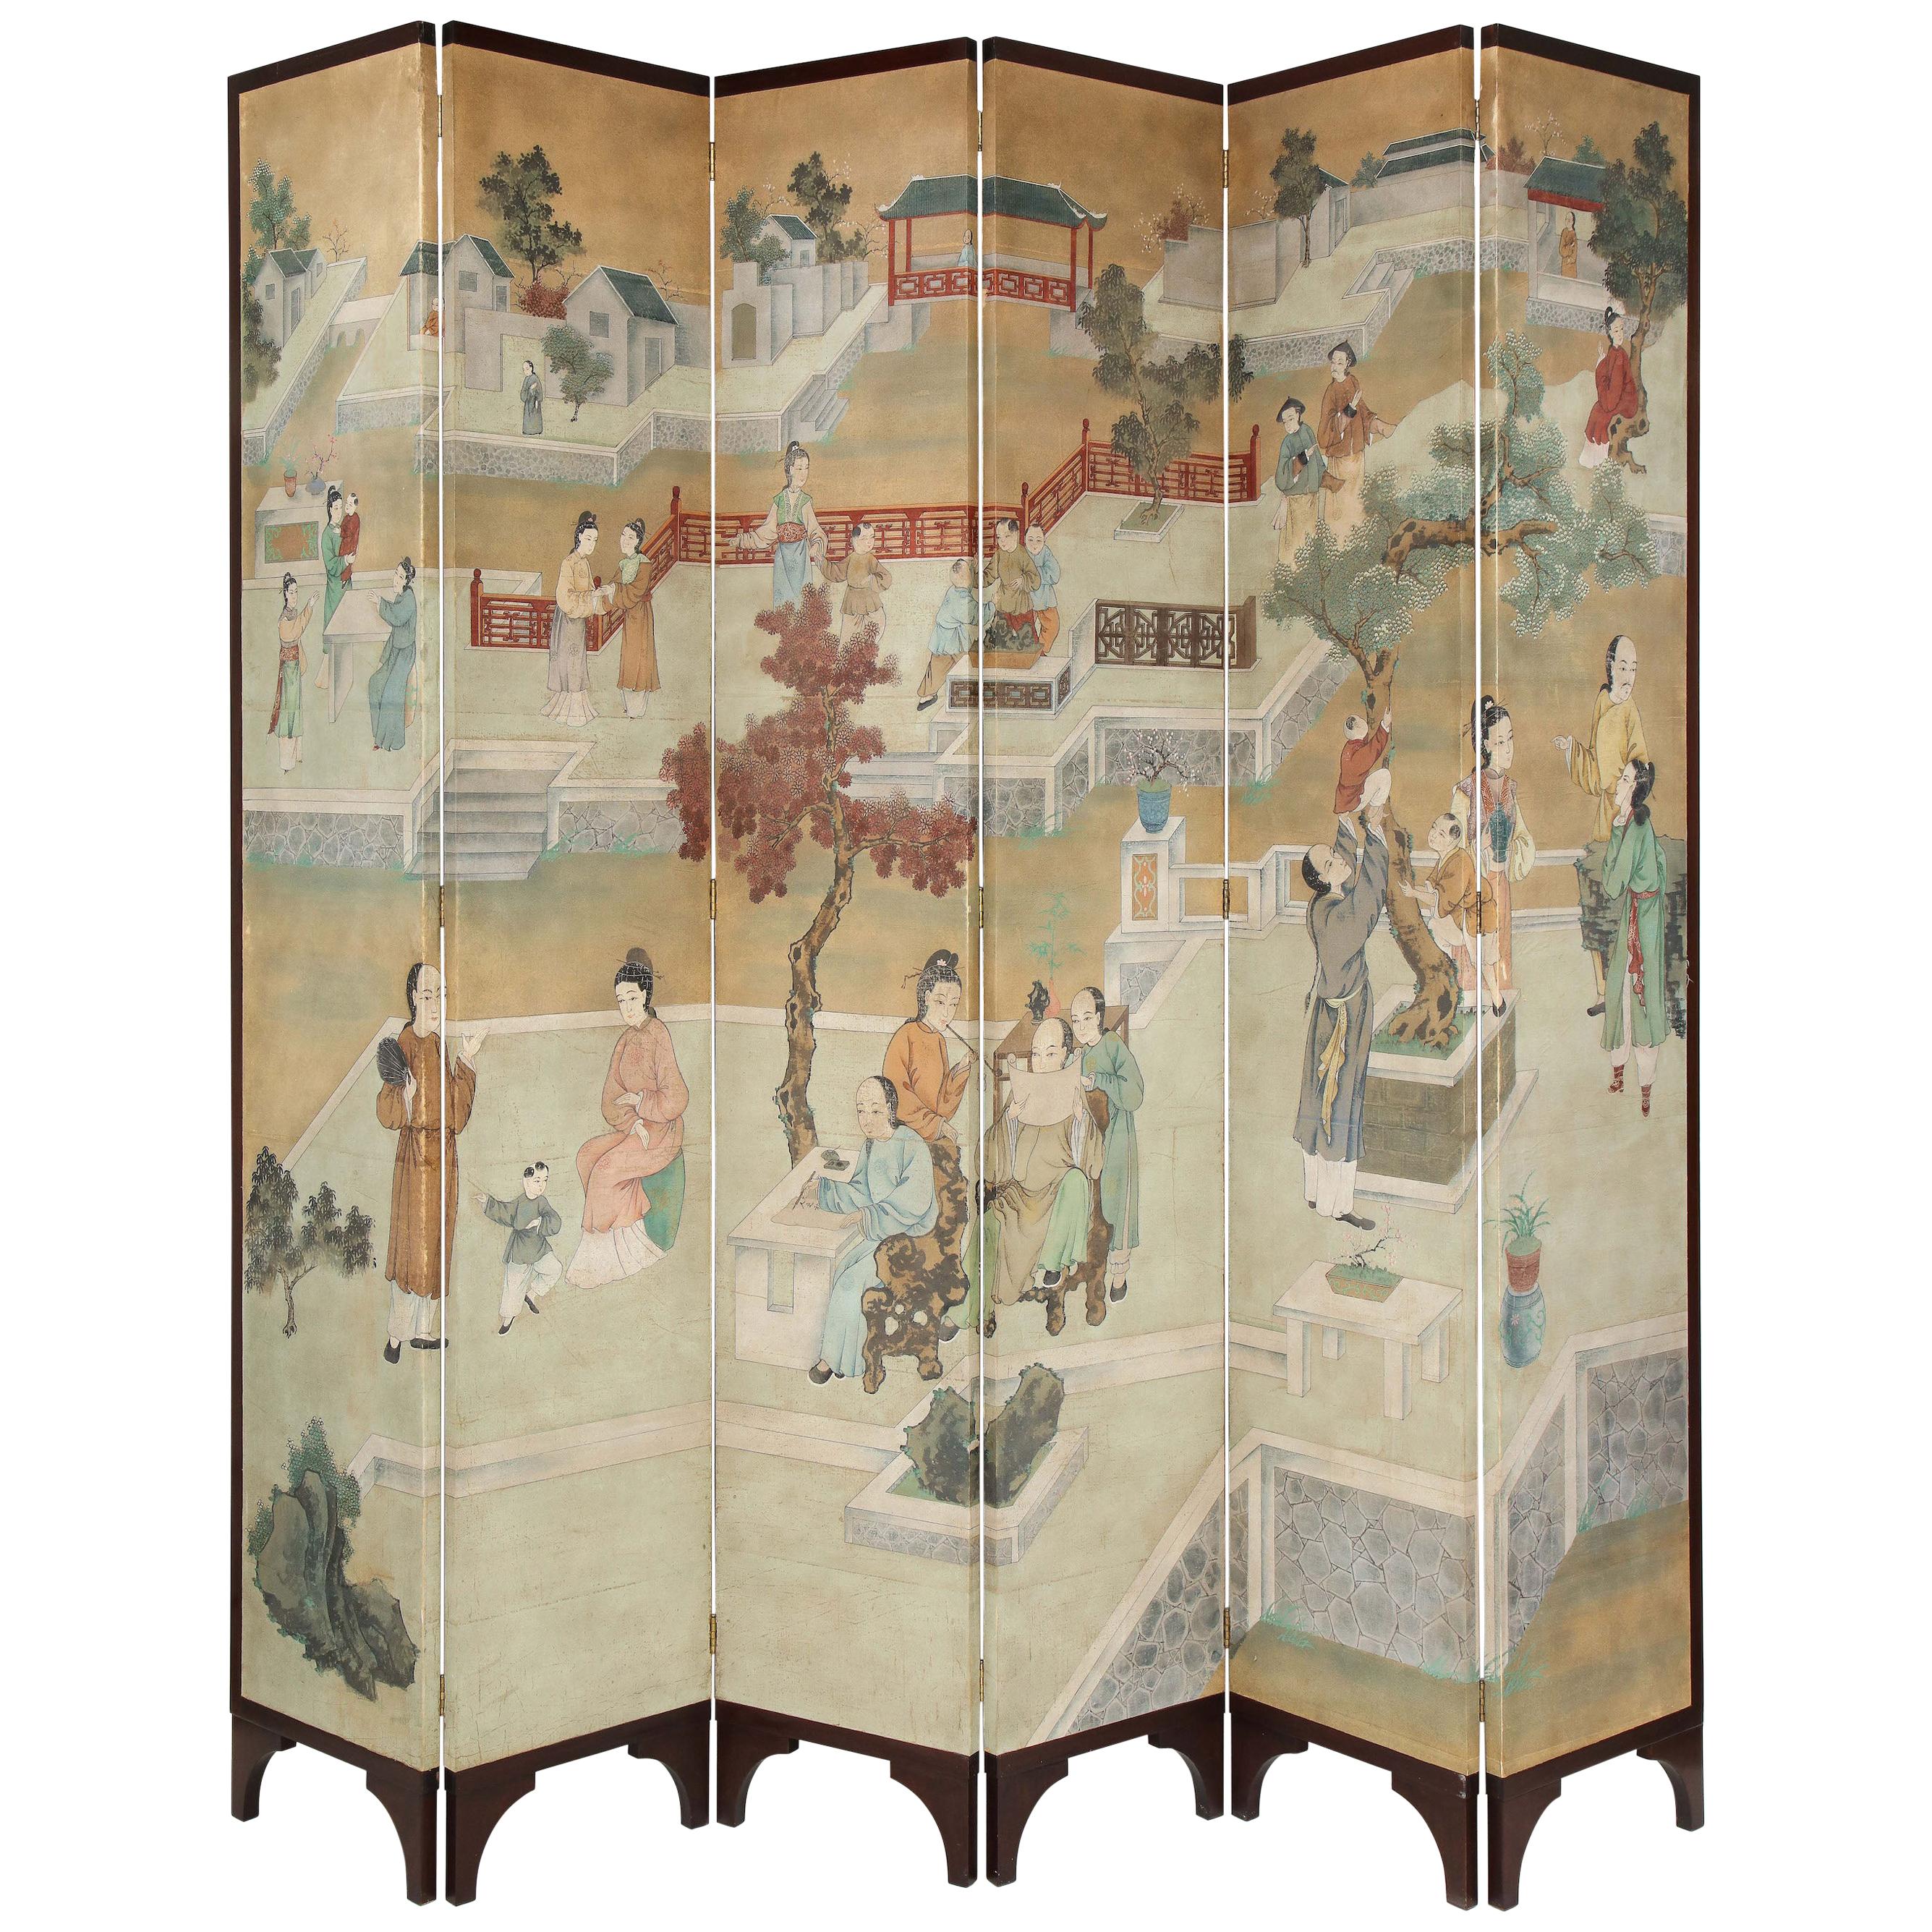 Beeindruckend großformatiger Chinoiserie-Raumteiler aus handbemalter Seide mit sechs Fächern